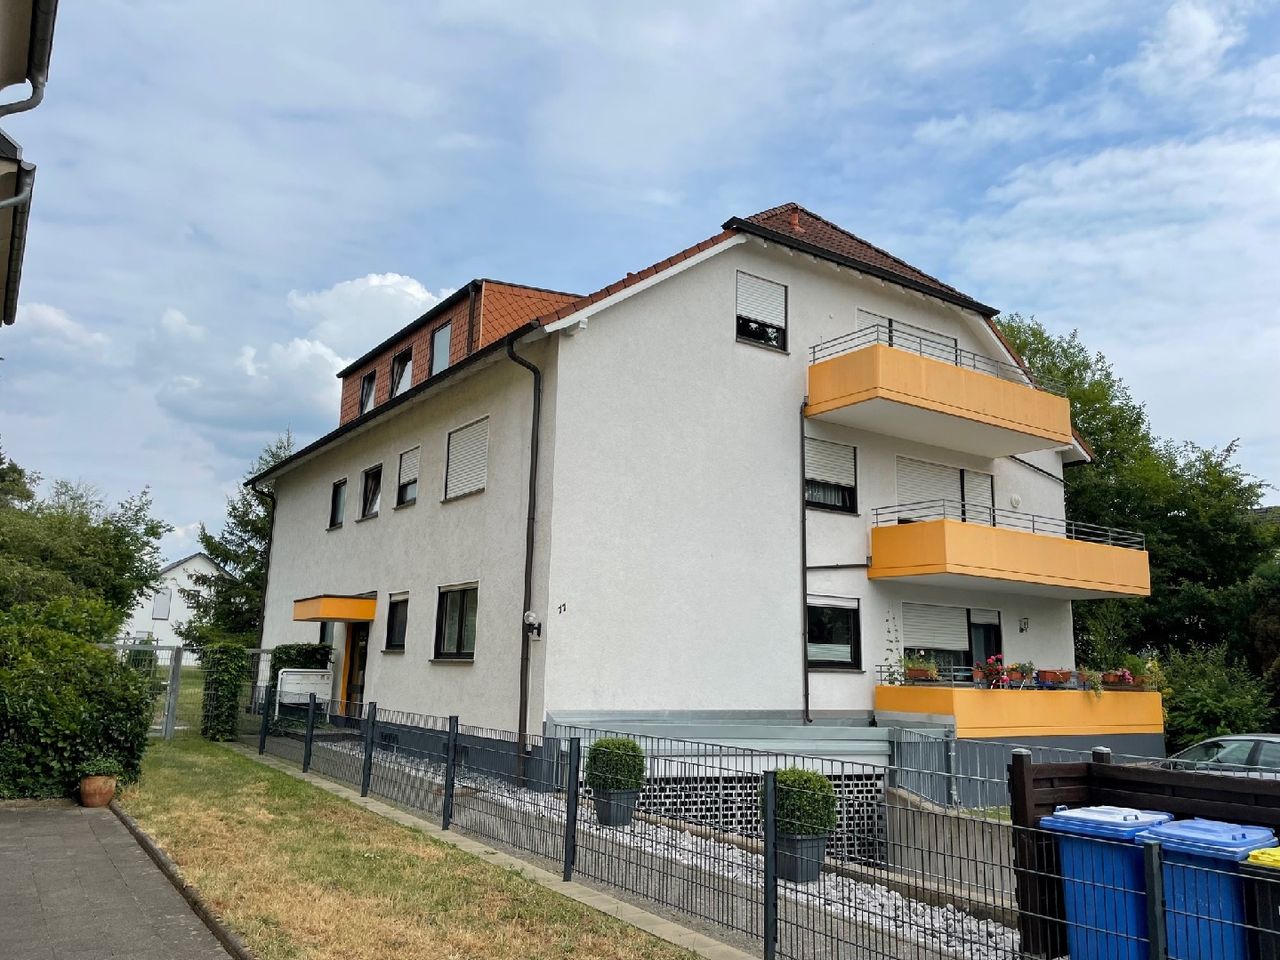 Eigentumswohnung mit Balkon in Bonn-Holzlar – Wohnen in idyllischer Lage